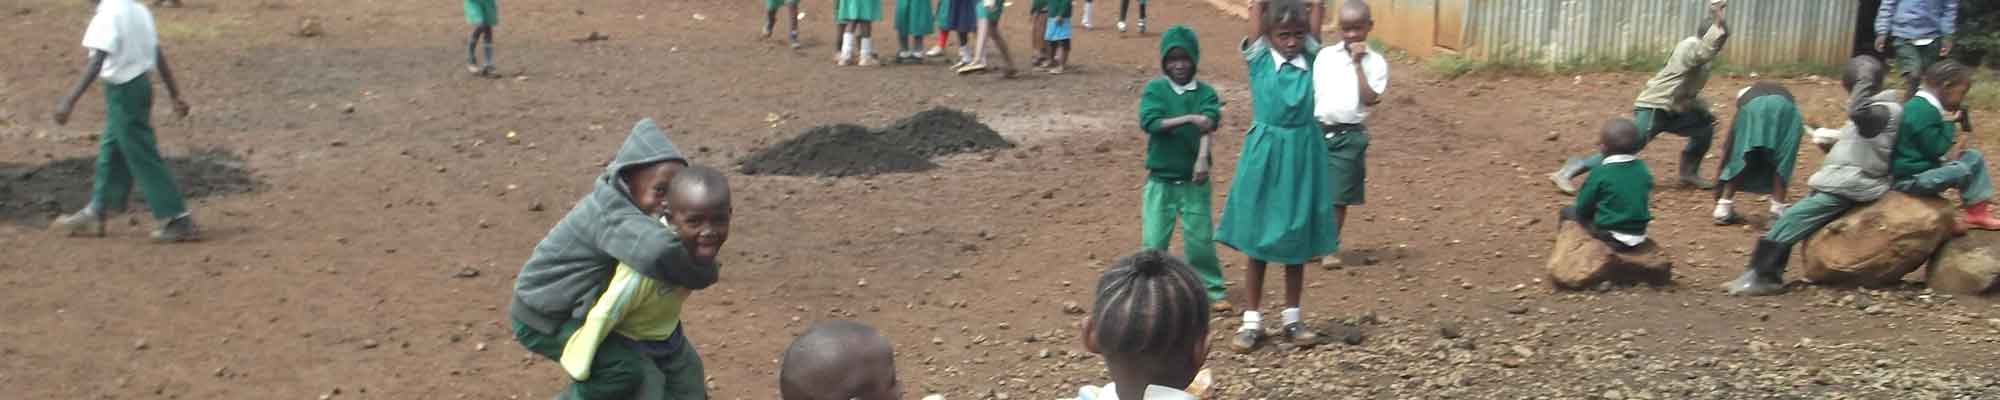 Children playing in Nairobi school